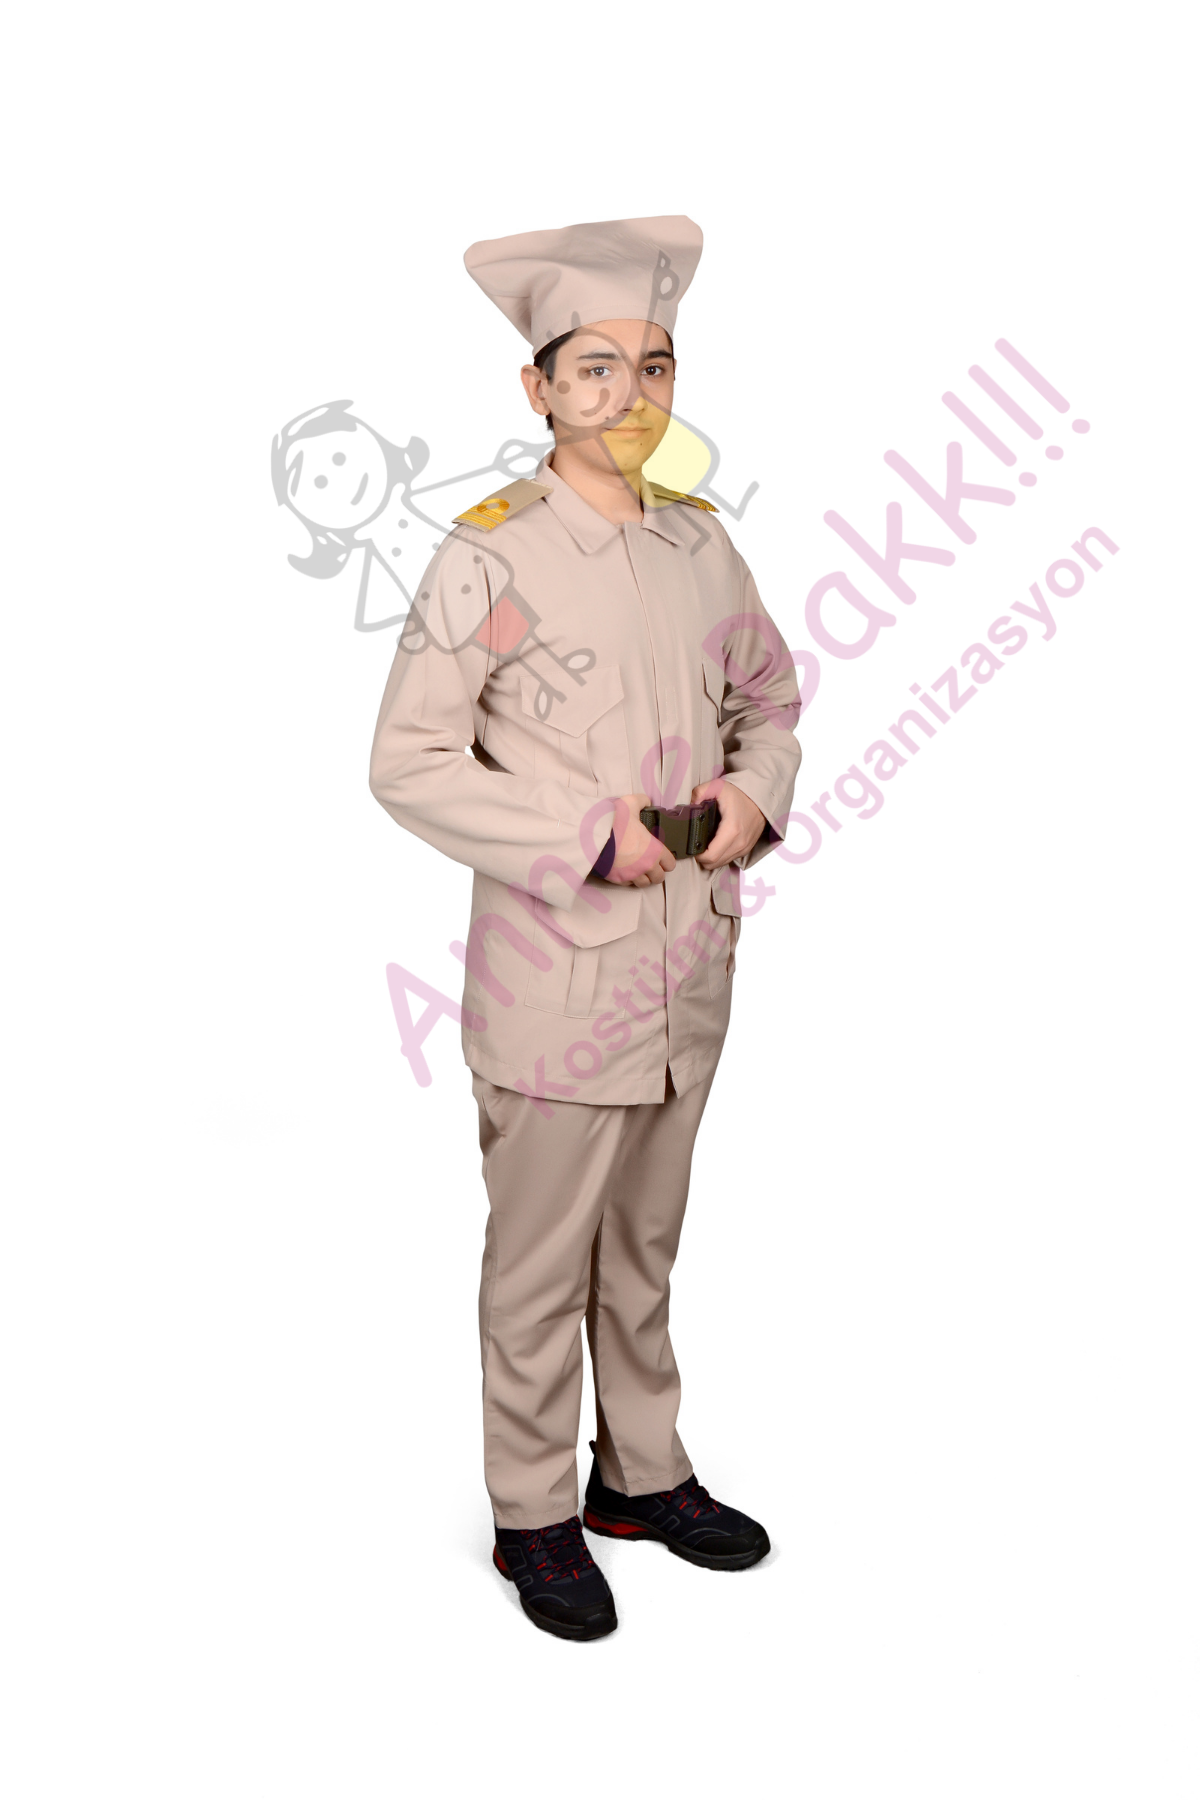 Çanakkale Savaşı Çocuk Asker Kıyafeti, Tarihi Çanakkale Çocuk Asker Kostümü, Hızlı Kargo